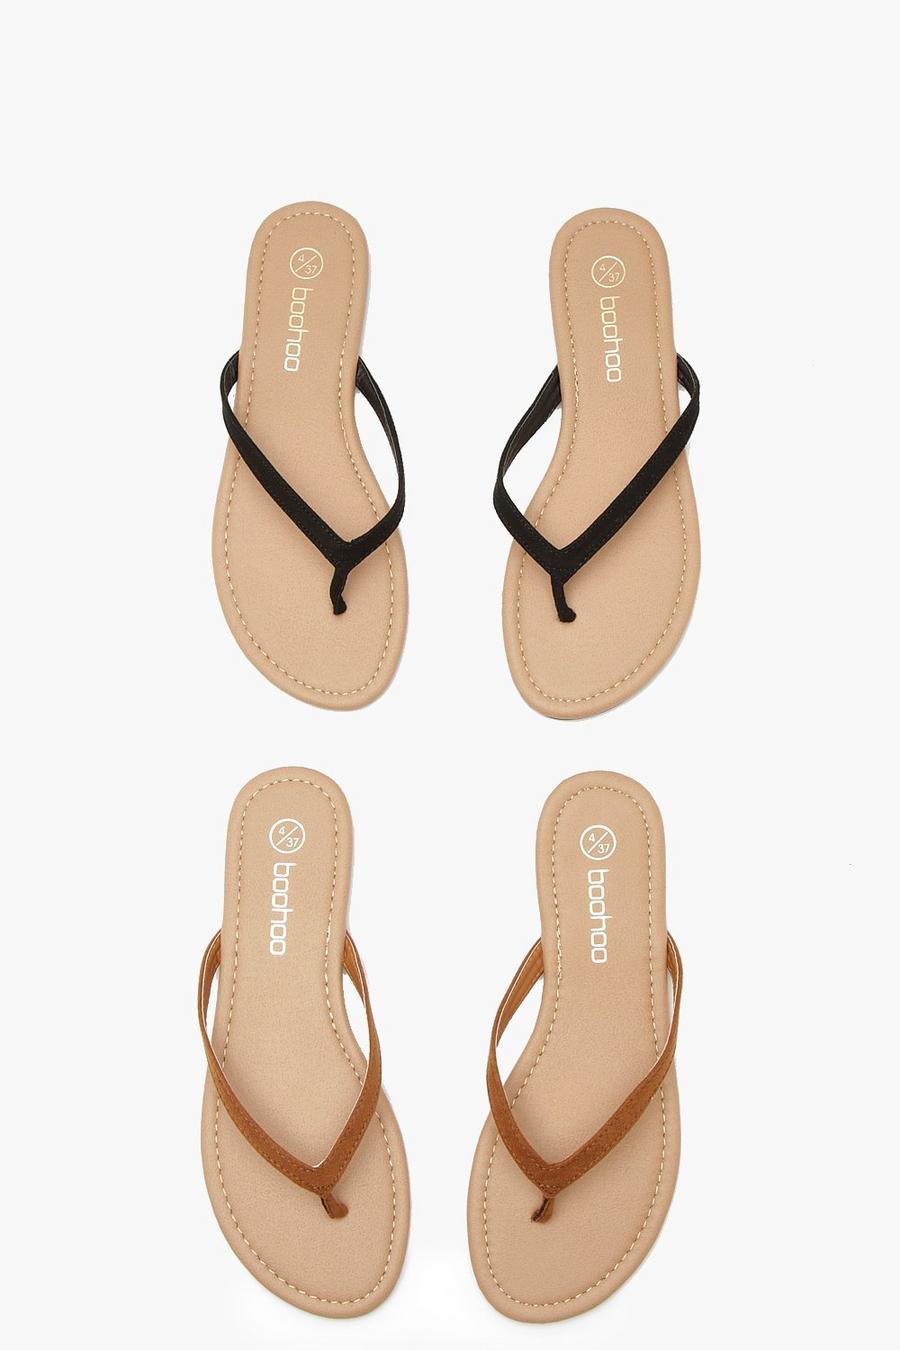 Women's Summer Shoes, Summer Heels